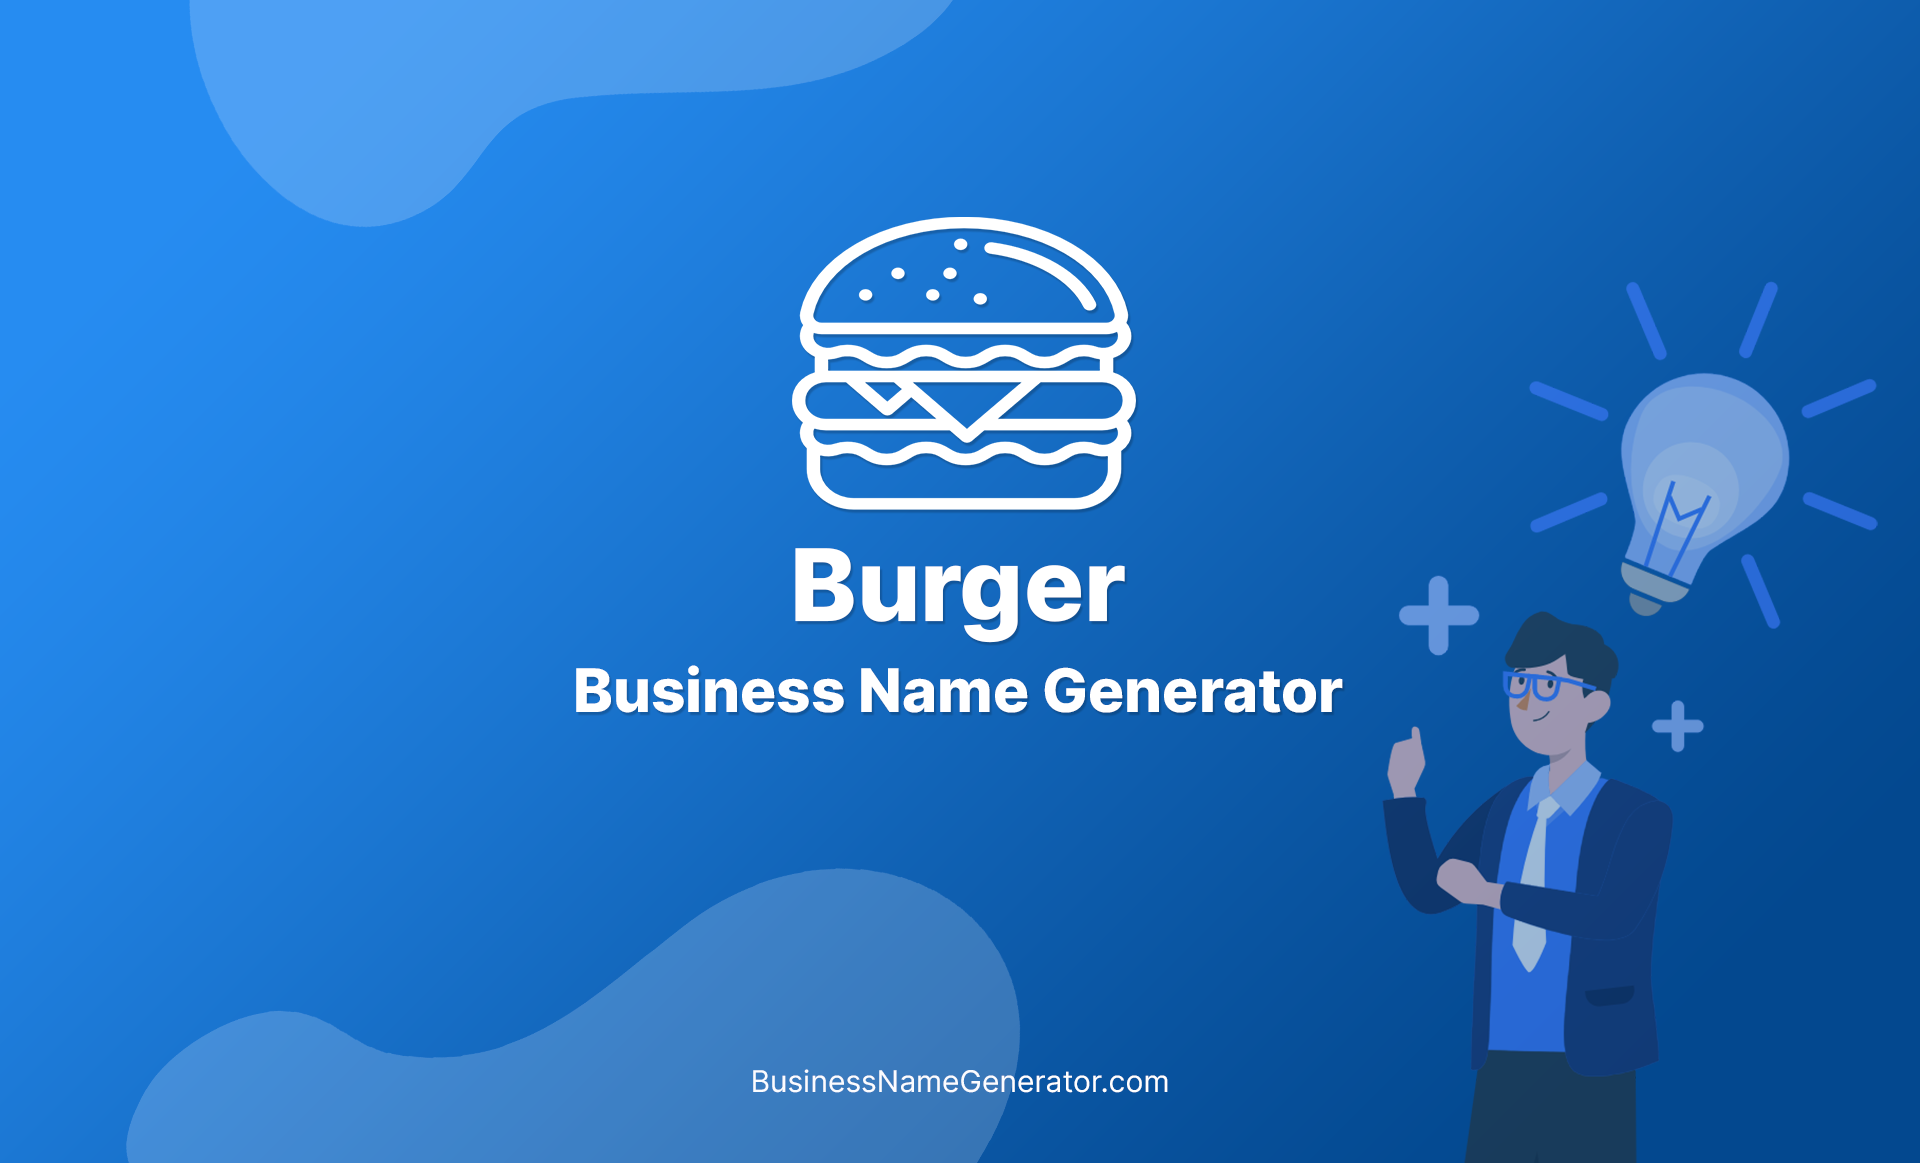 Burger Business Name Generator